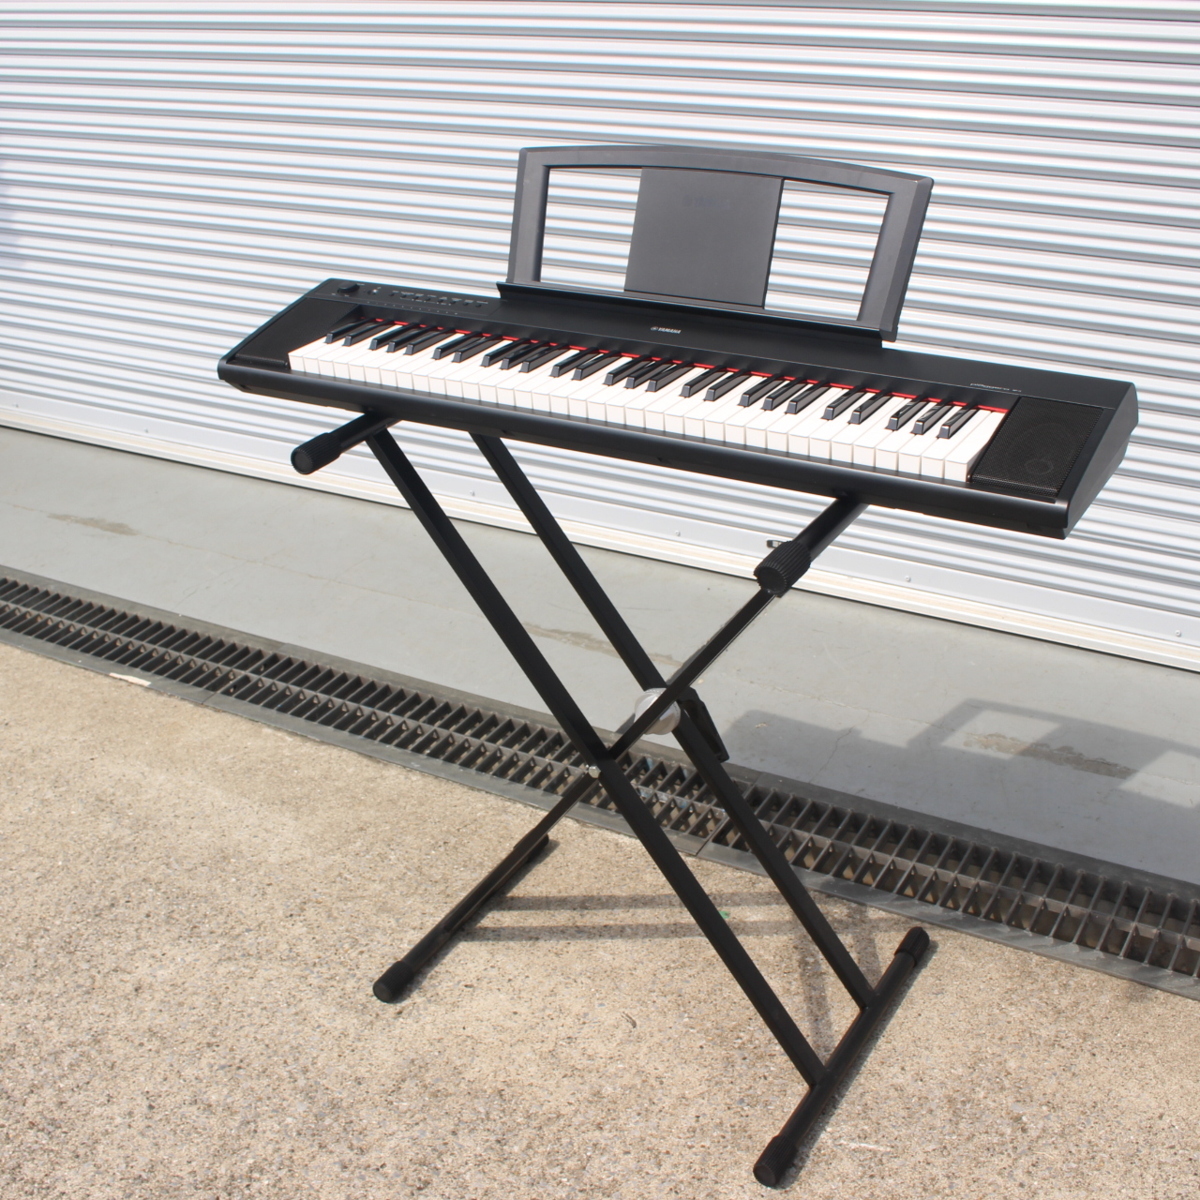 ヤマハ NP-11 piaggero ピアジェーロ 電子ピアノ 61鍵盤搭載 スタンド付き